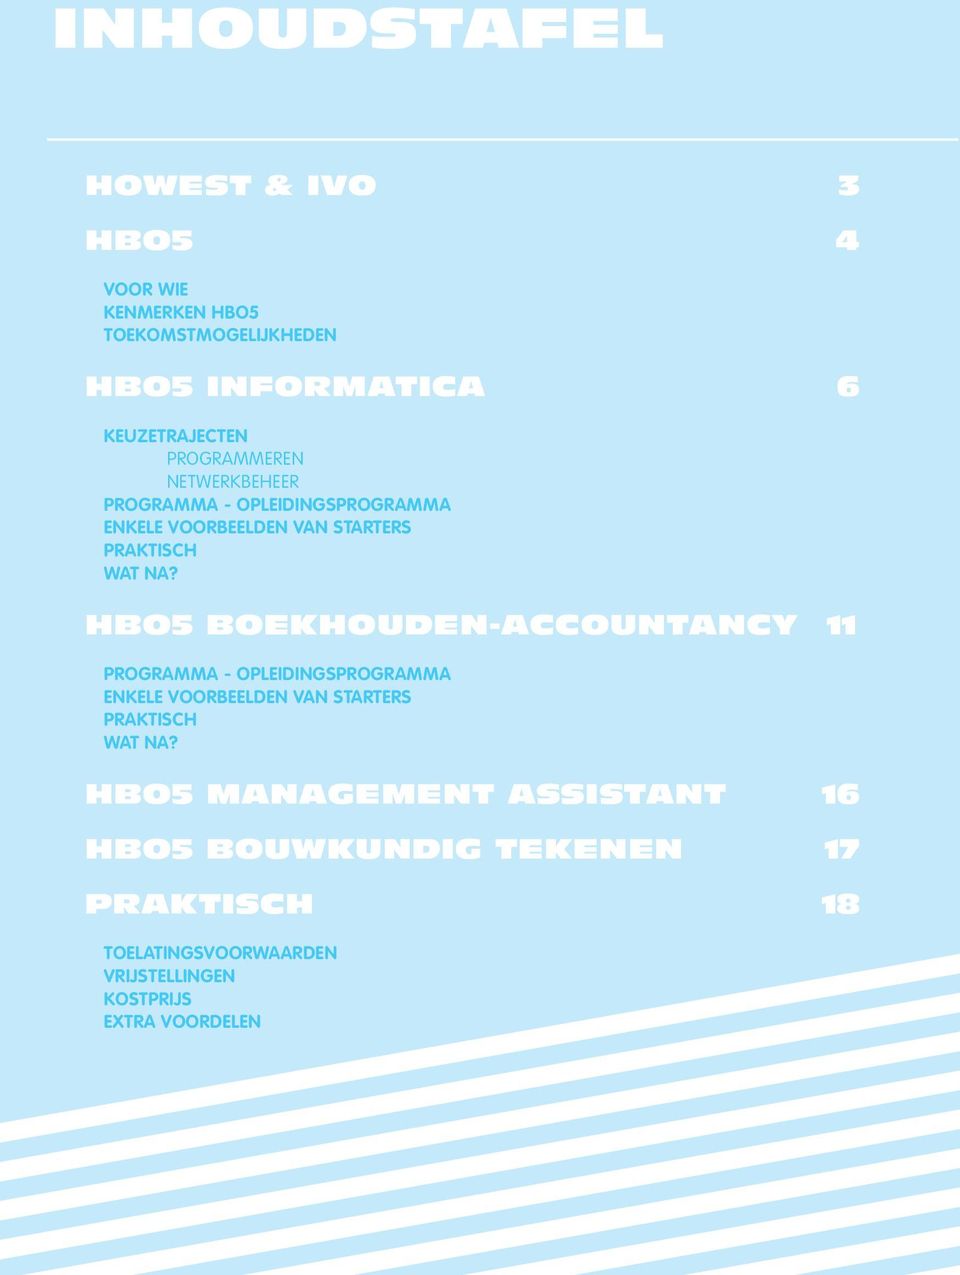 hbo5 boekhouden-accountancy 11 programma - opleidingsprogramma enkele voorbeelden van starters praktisch wat na?